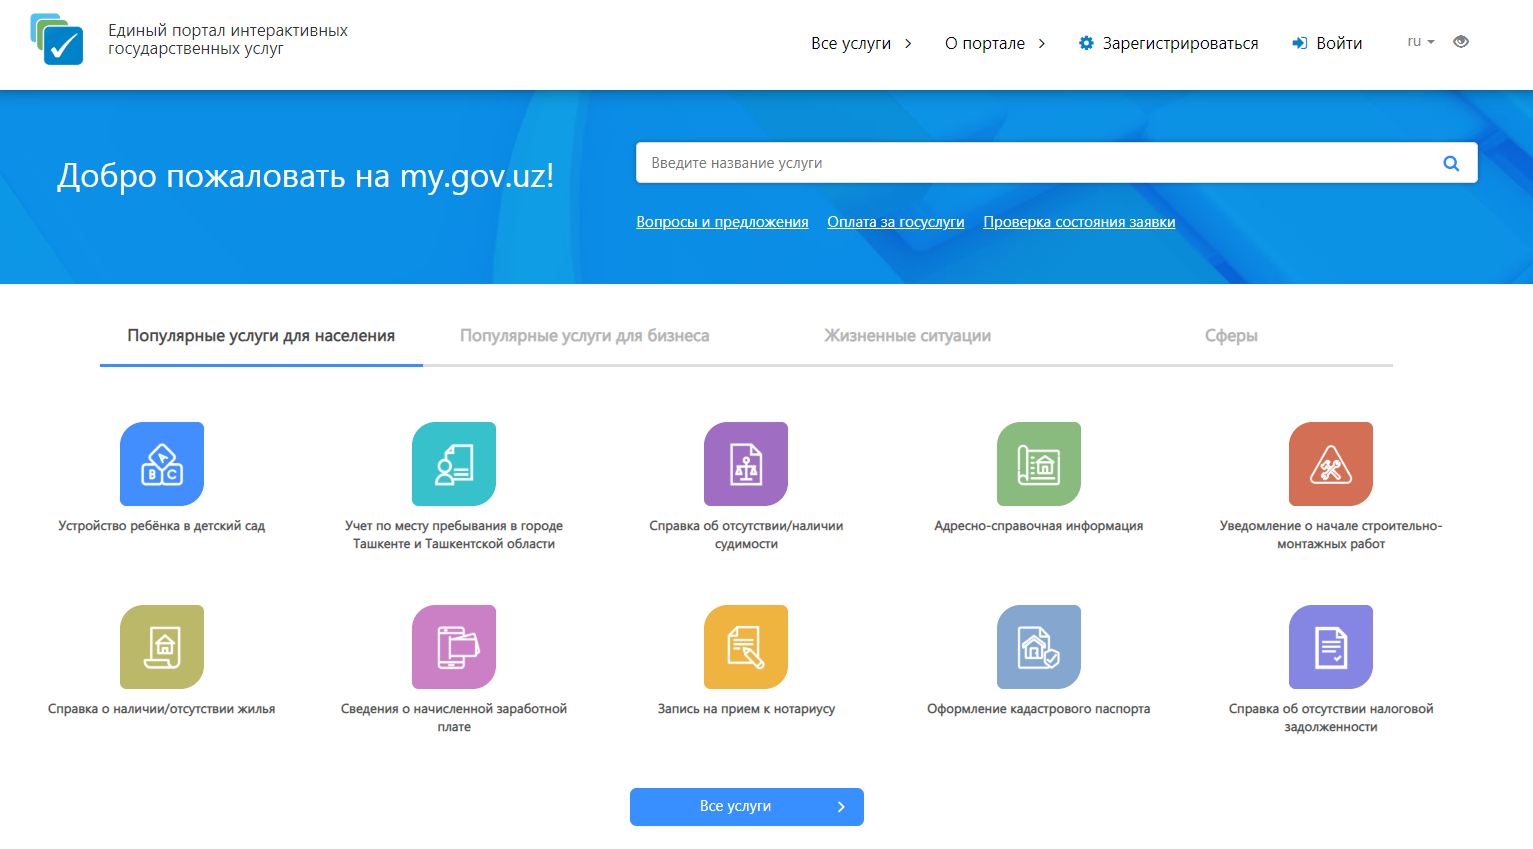 Https my gov. Ягона интерактив. Единый портал интерактивных государственных услуг Узбекистана.